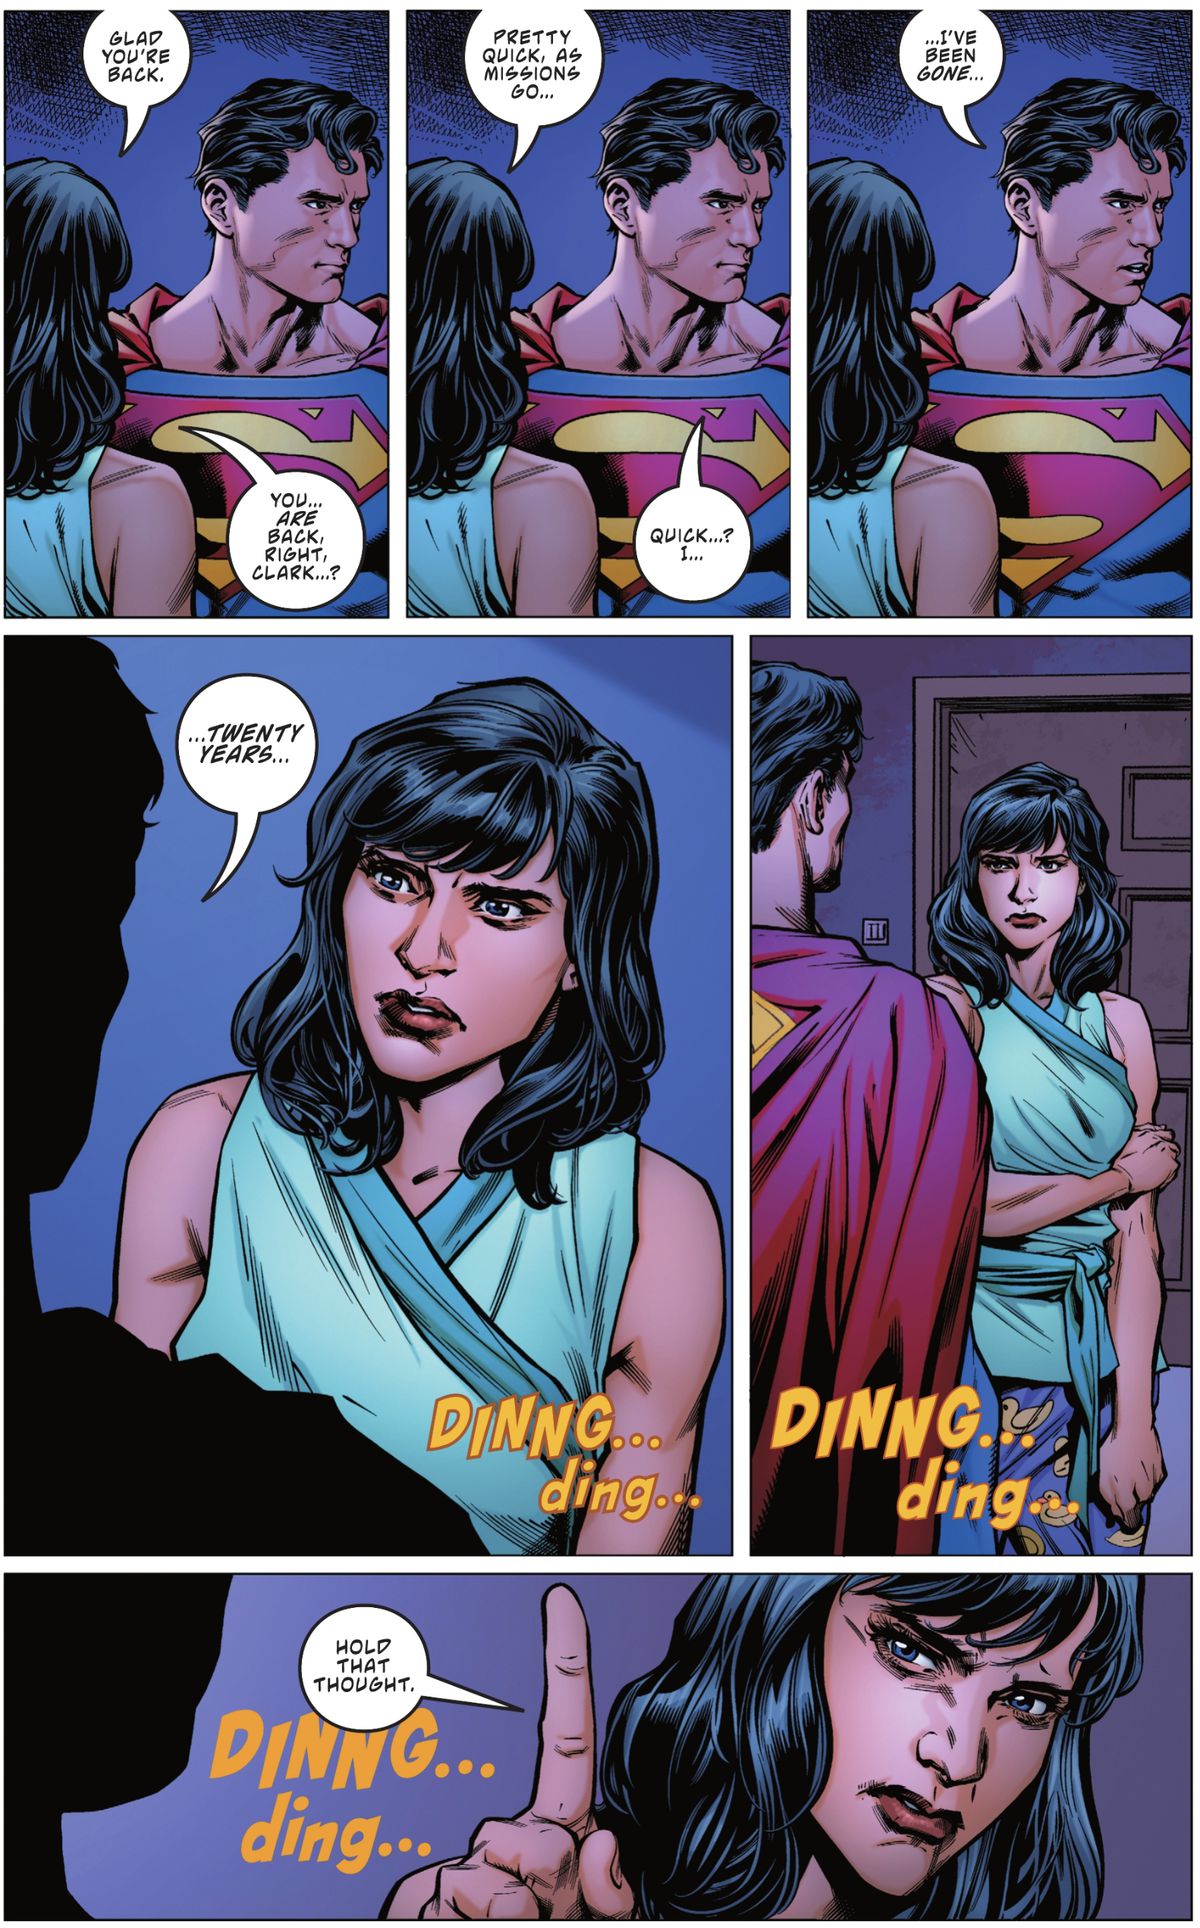 «Ты вернулся», — говорит Лоис Лейн потрясенному Супермену, стоящему неподвижно в их квартире. «Довольно быстро, как проходят миссии». После долгого молчания он наконец говорит: «Быстро? Я... меня не было двадцать лет. Затем раздается звонок в дверь в «Супермен: Потерянный №1» (2023).